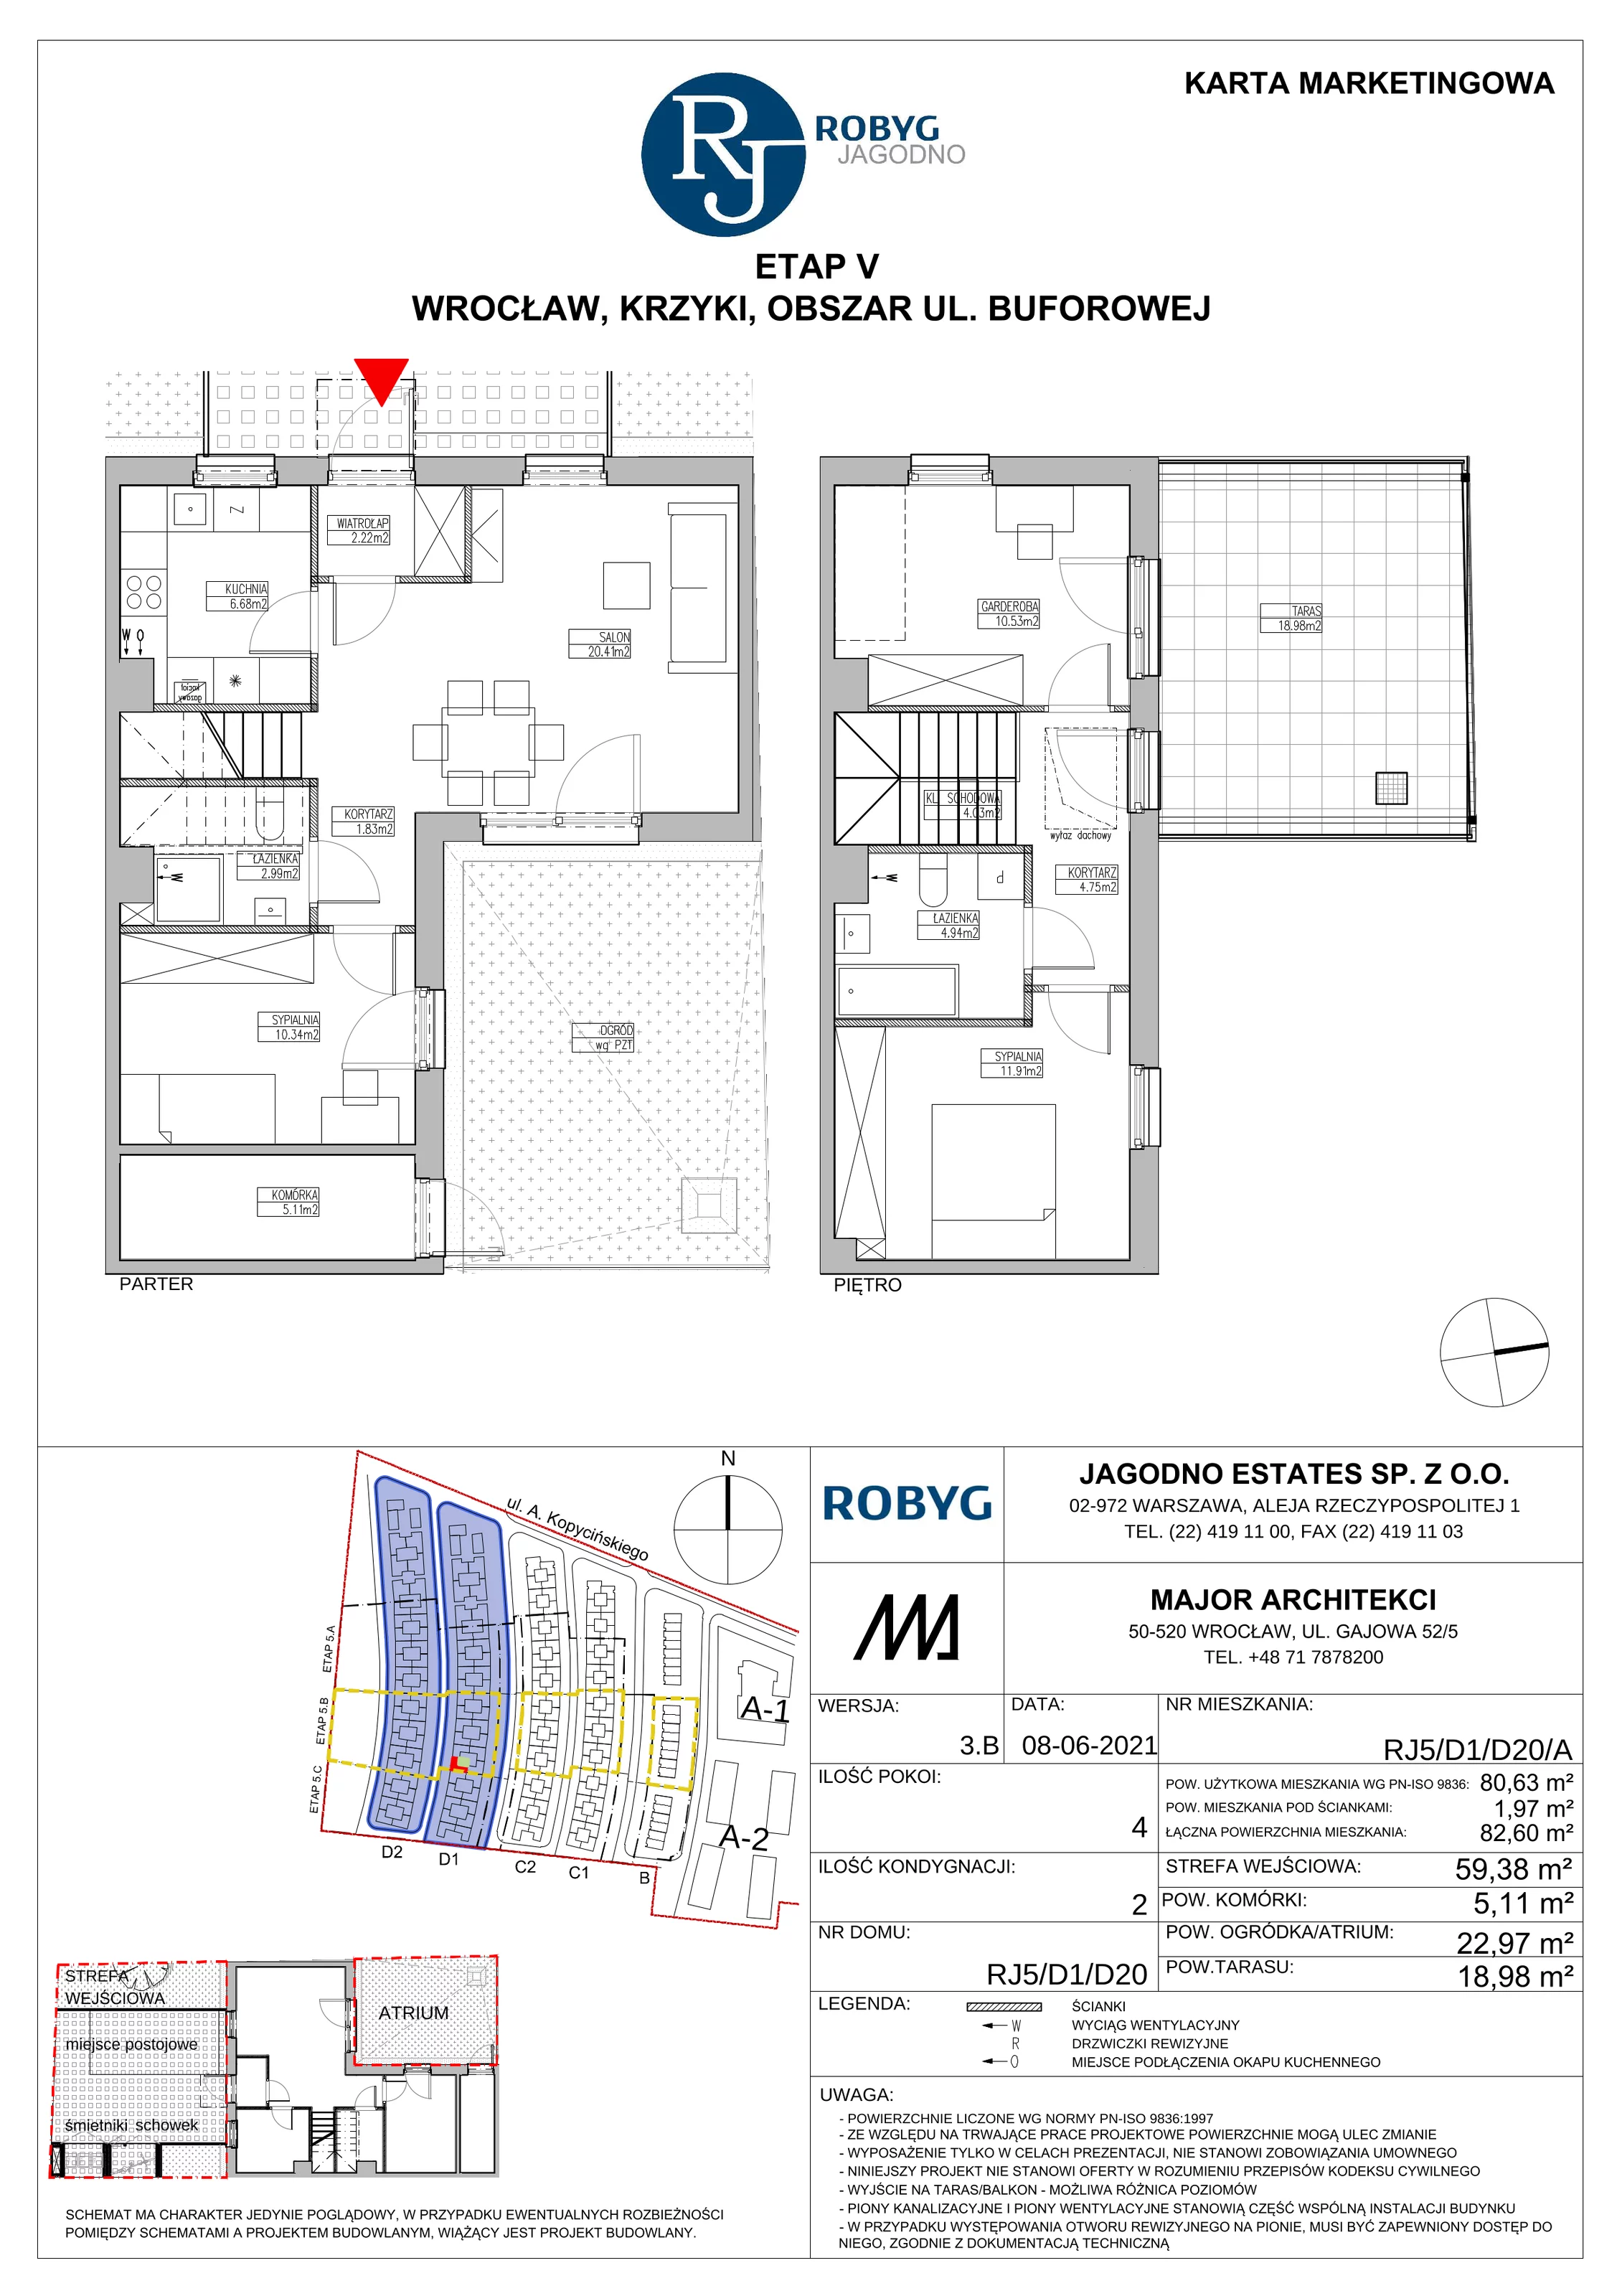 Dom 80,63 m², oferta nr RJ5/D1/D20/A, Robyg Jagodno, Wrocław, Jagodno, Krzyki, ul. Kopycińskiego